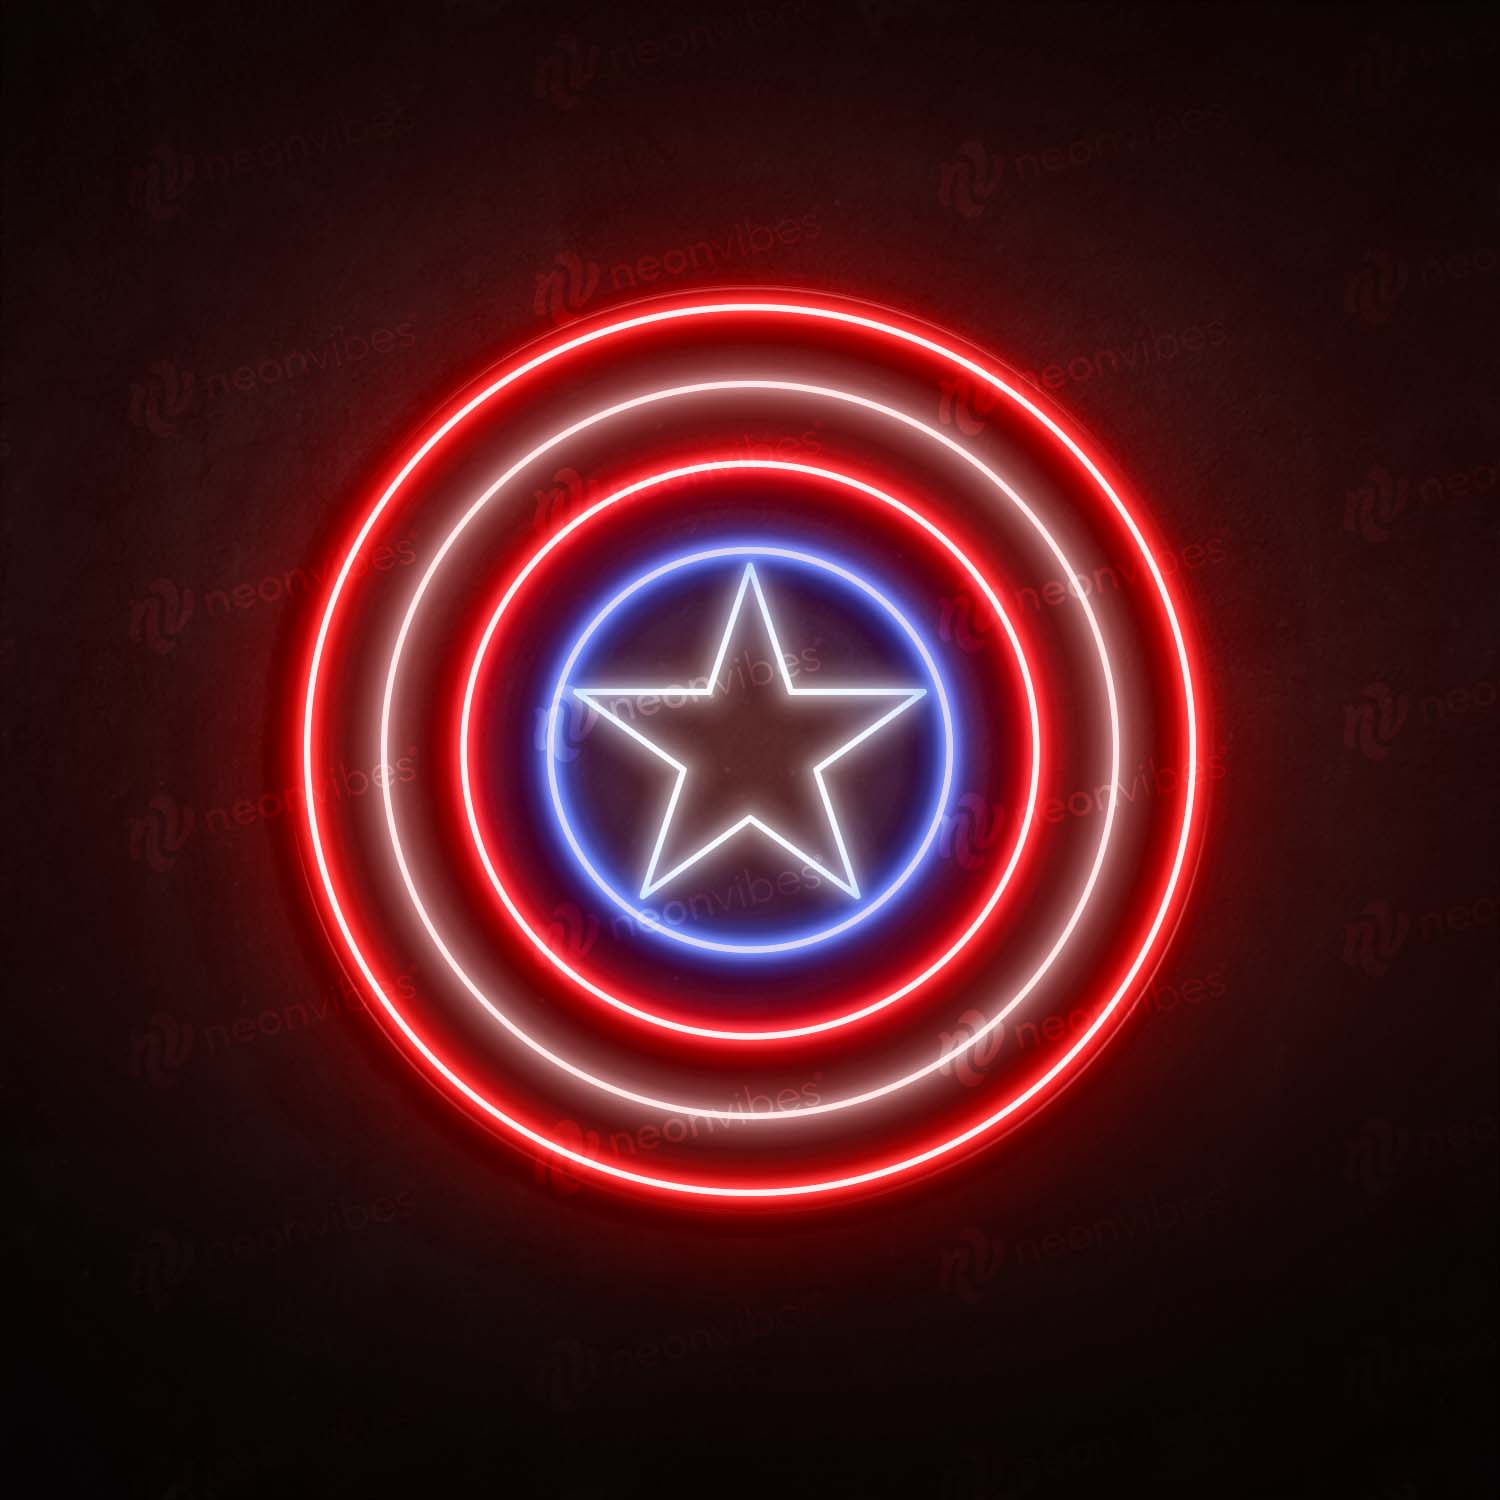 Captain America neon sign